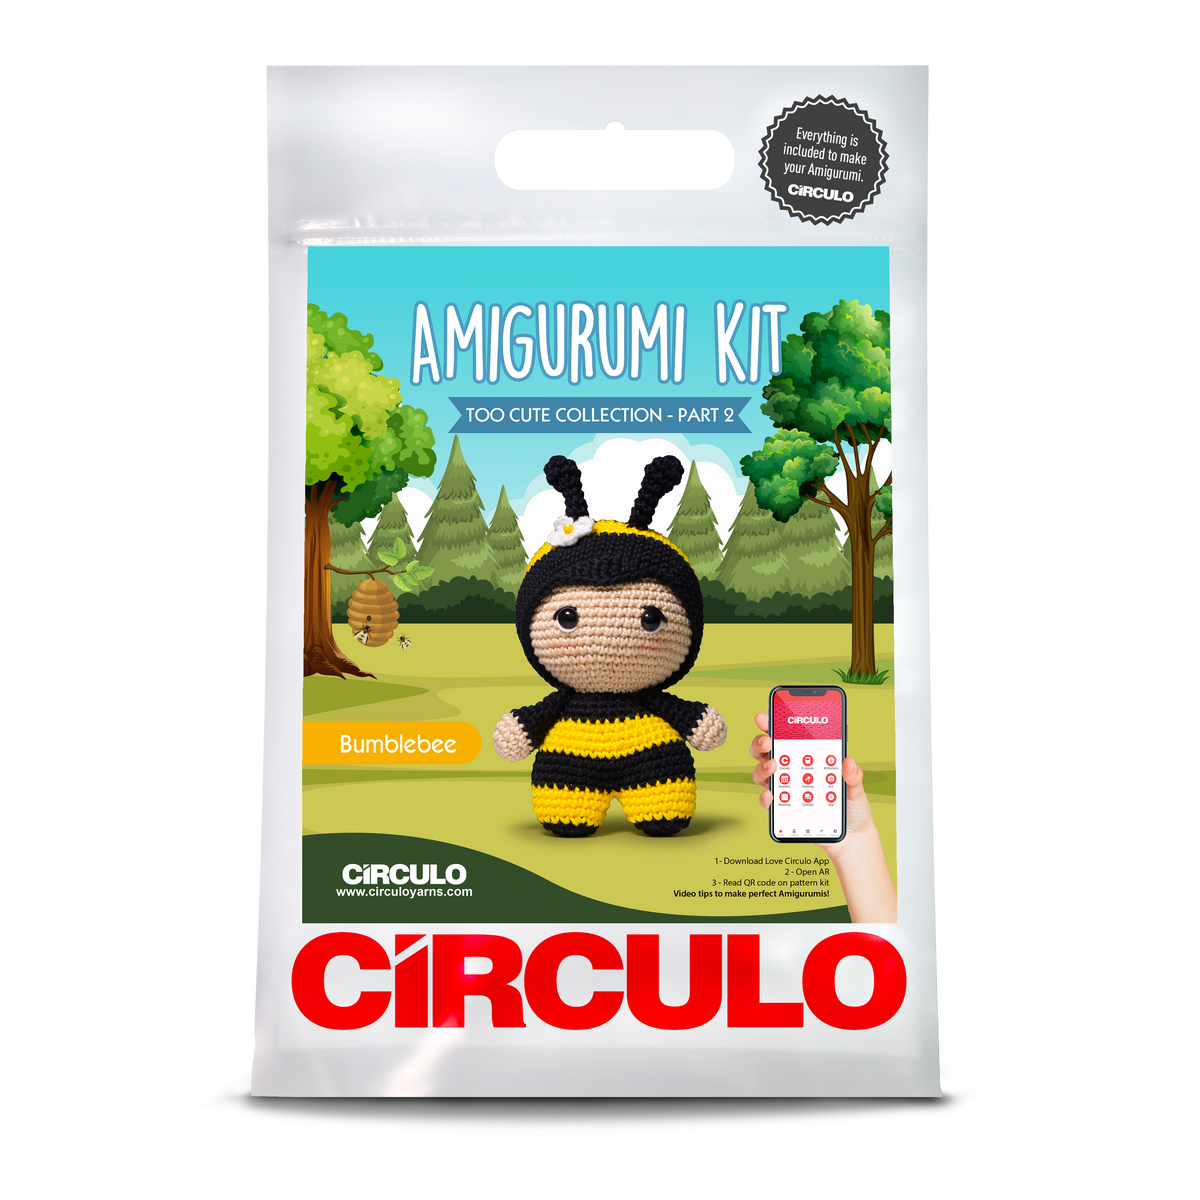 Circulo Amigurumi Too Cute 2 Kits